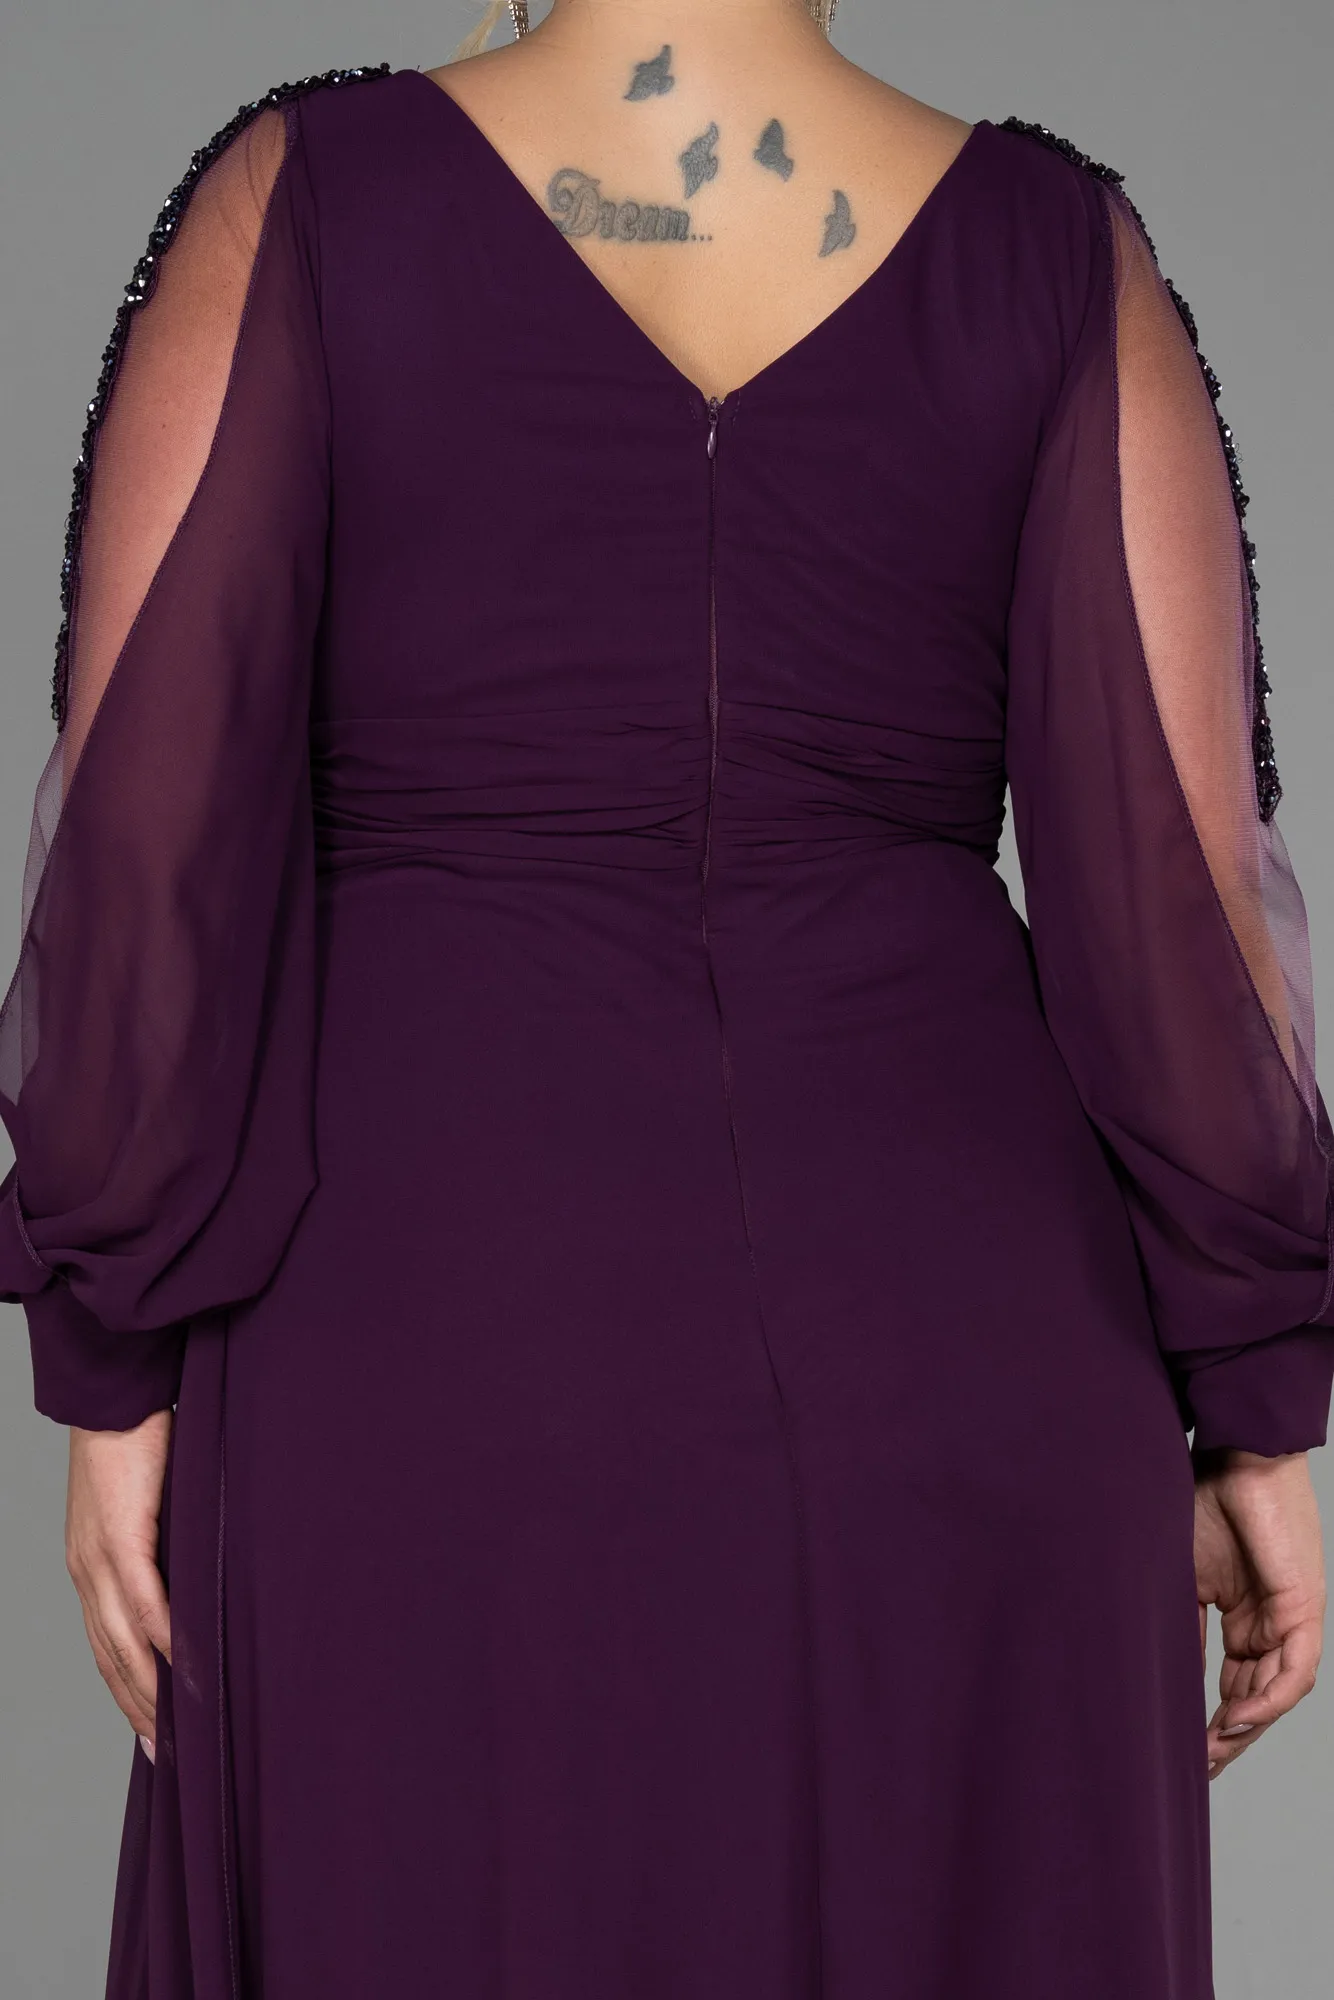 Purple-Long Chiffon Plus Size Evening Dress ABU3221